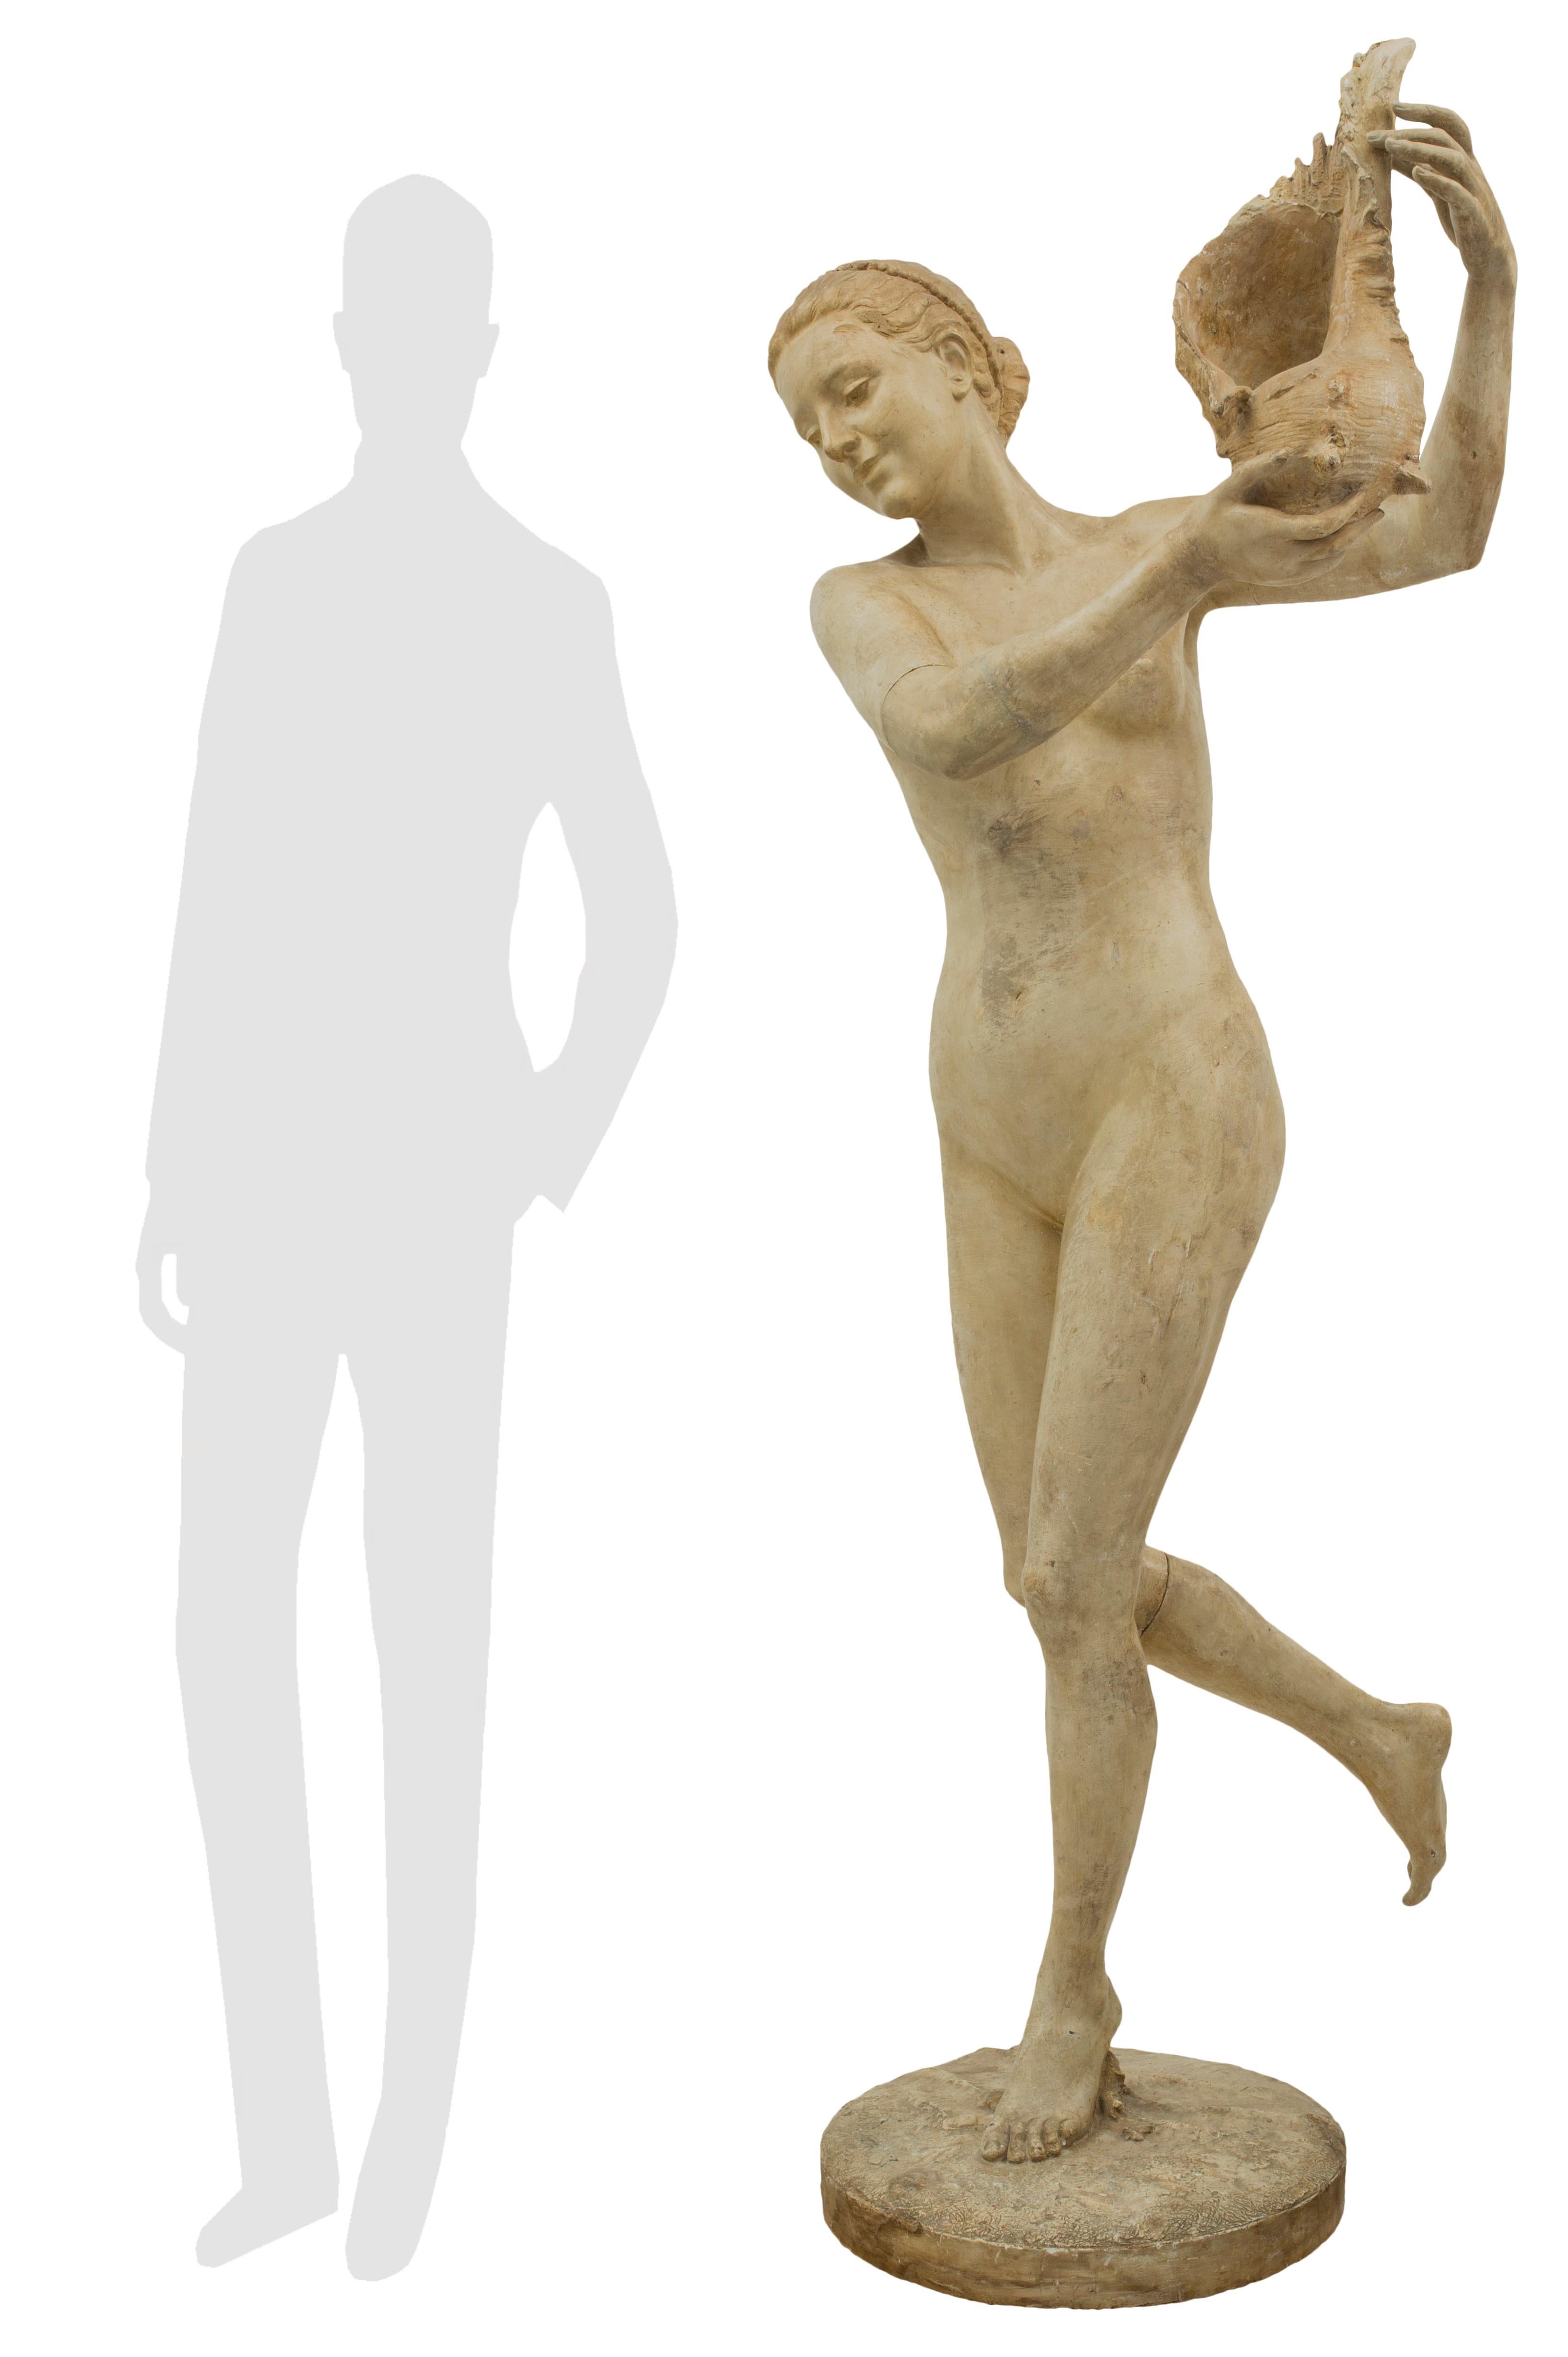 Charmante statue italienne en plâtre du XIXe siècle représentant une belle jeune femme tenant un grand coquillage, signée Gabrieli. La statue est surélevée par une base circulaire au design semblable à celui d'un terrain et la dame souriante,